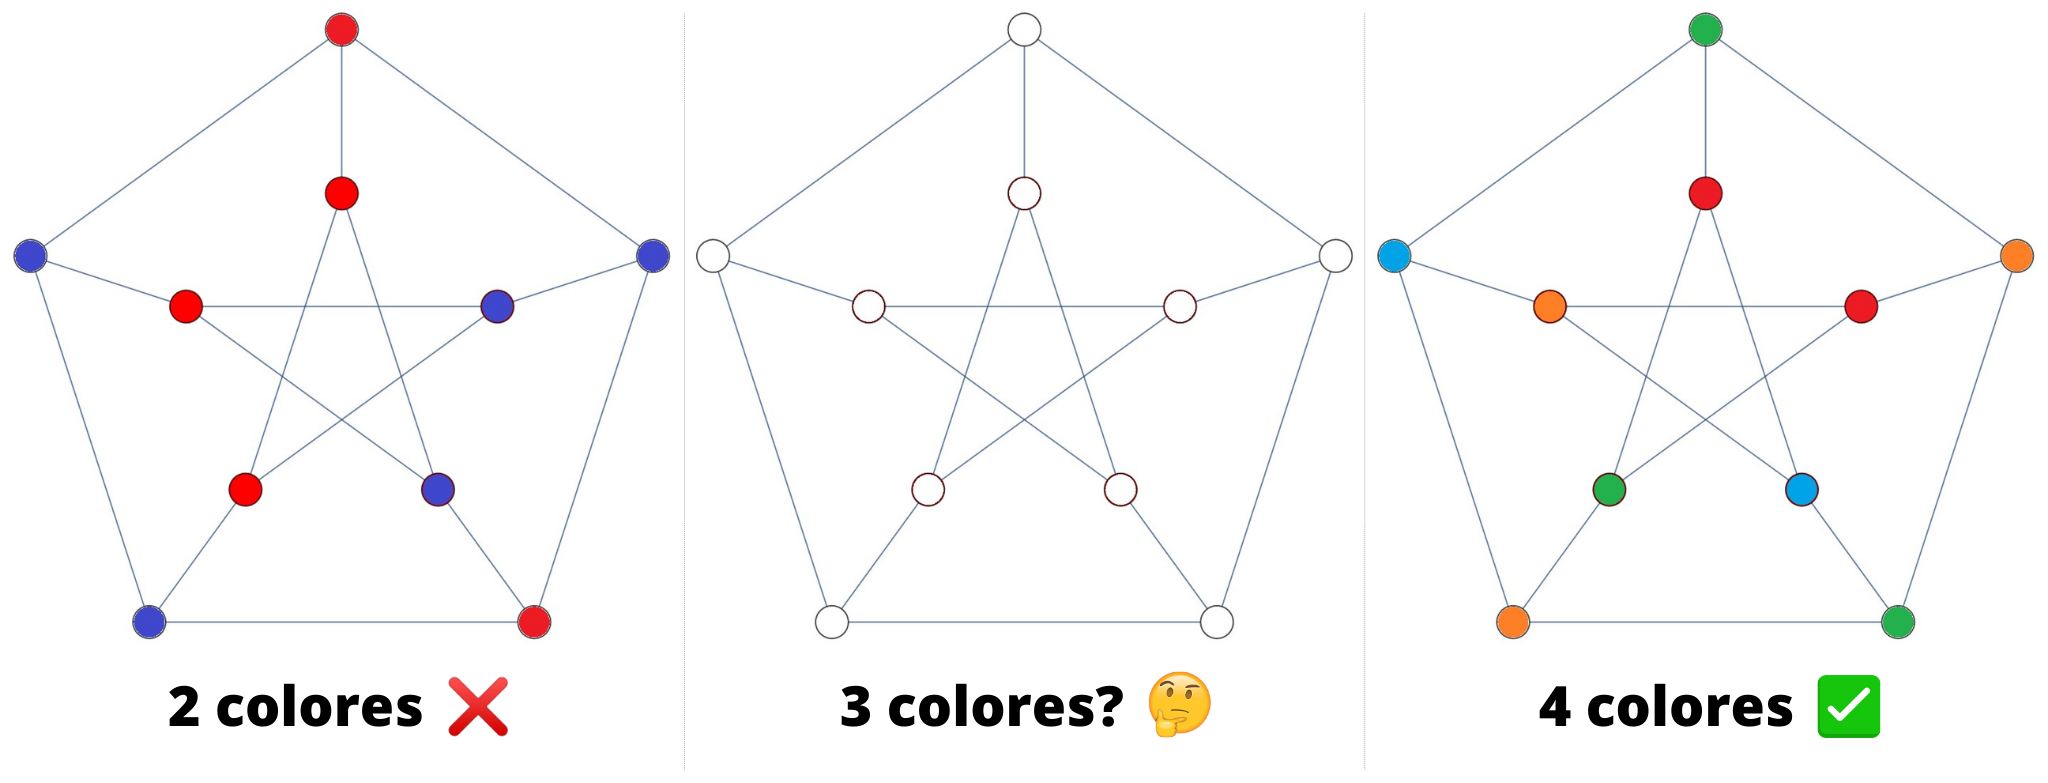 Mientras que con 2 y 4 colores es fácil llegar a una conclusión de sí/no, 3 colores resulta una tarea difícil de demostrar, no importa el gráfico. 